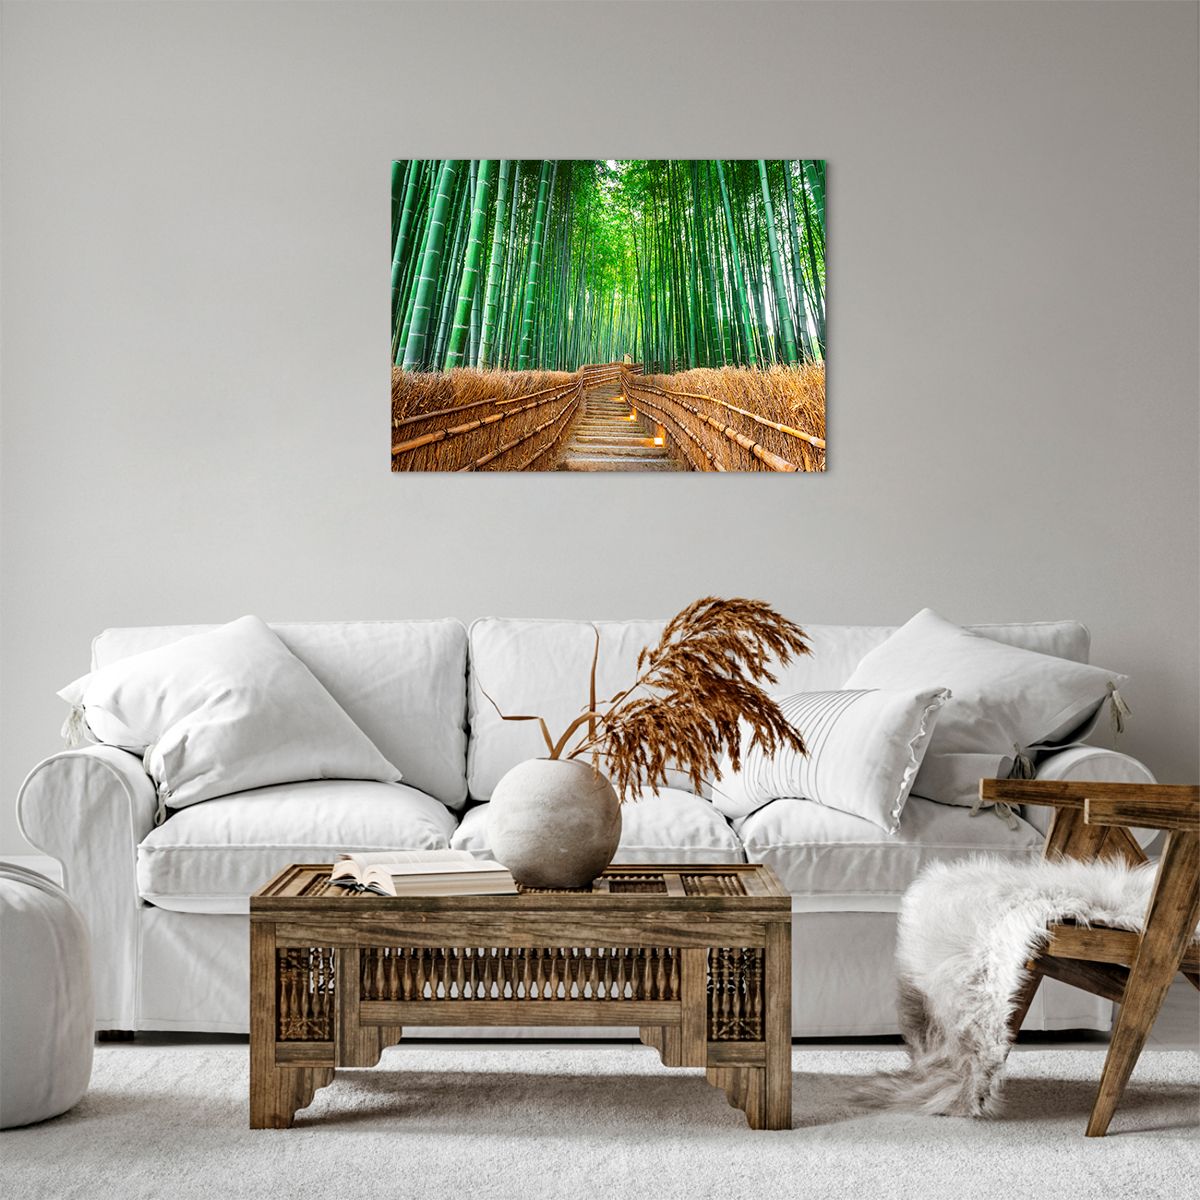 Quadro su tela Bambù, Quadro su tela Foresta Di Bamboo, Quadro su tela Natura, Quadro su tela Paesaggio, Quadro su tela Asia